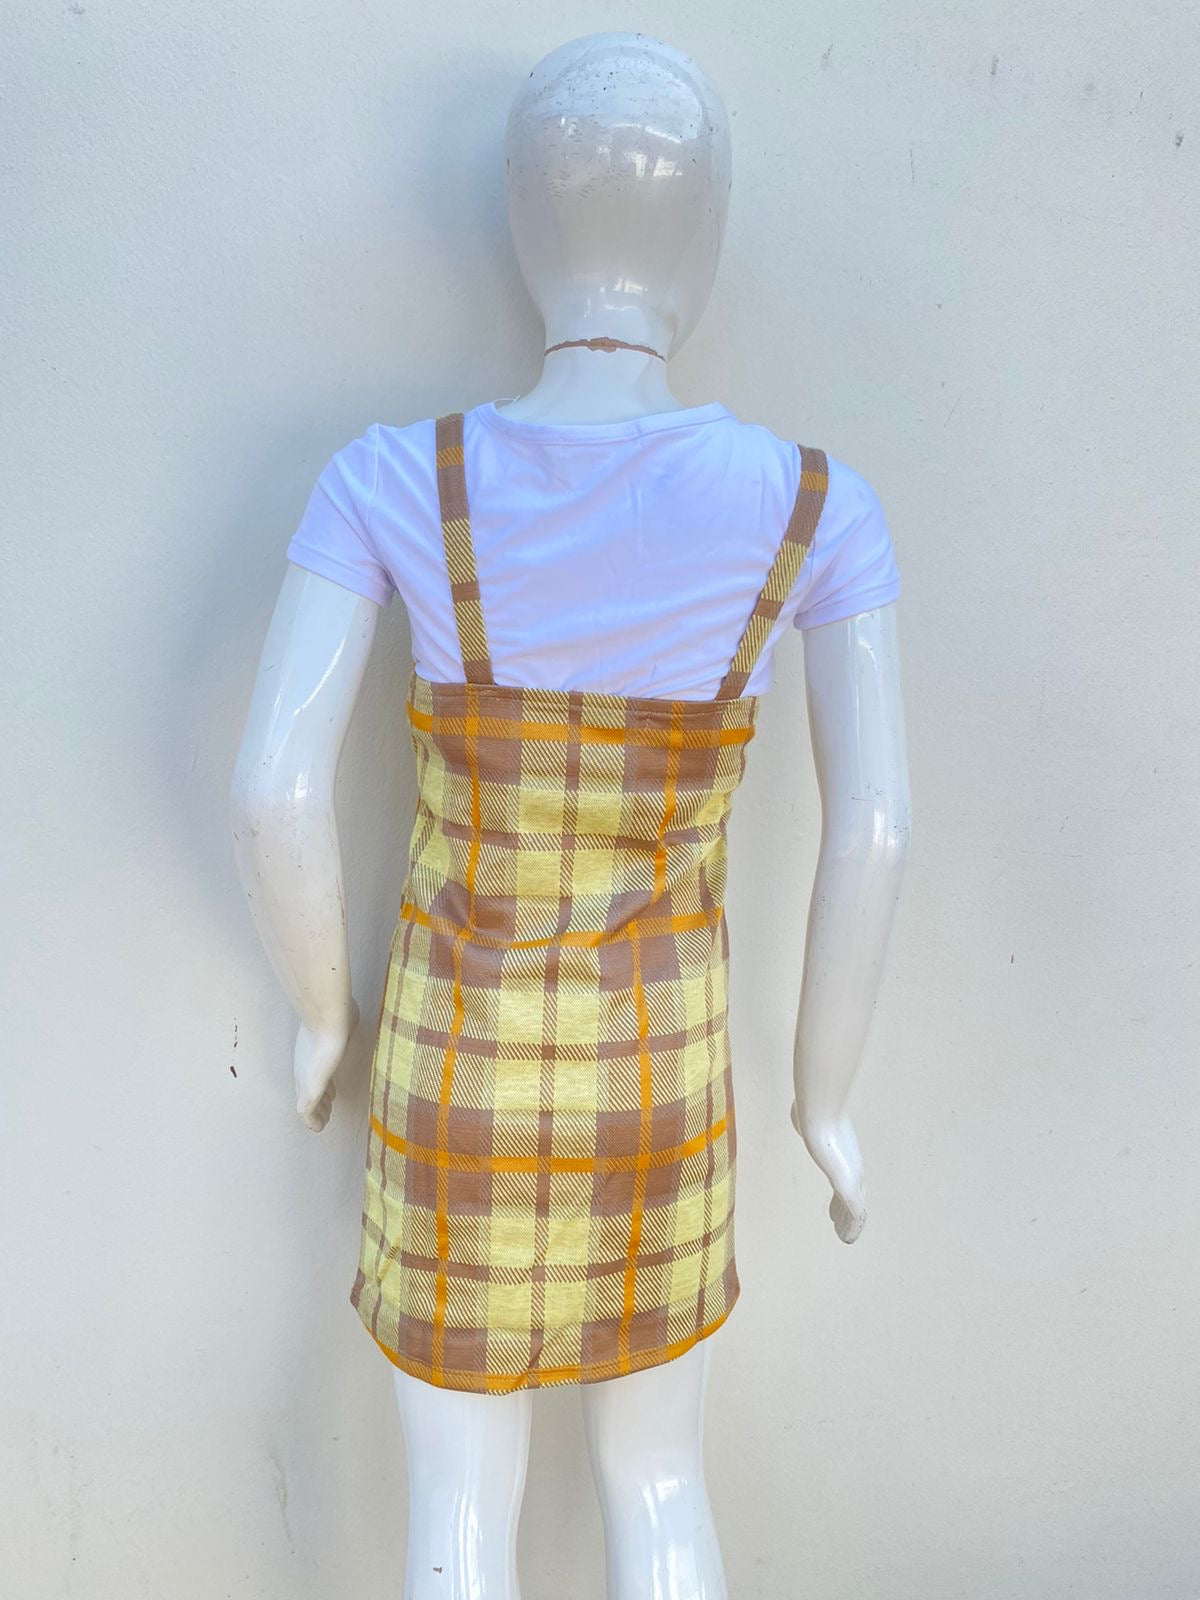 Conjunto/vestido No Comment GIRLS original, anaranjado de cuadros con blusa blanca y oso pequeño en el centro.